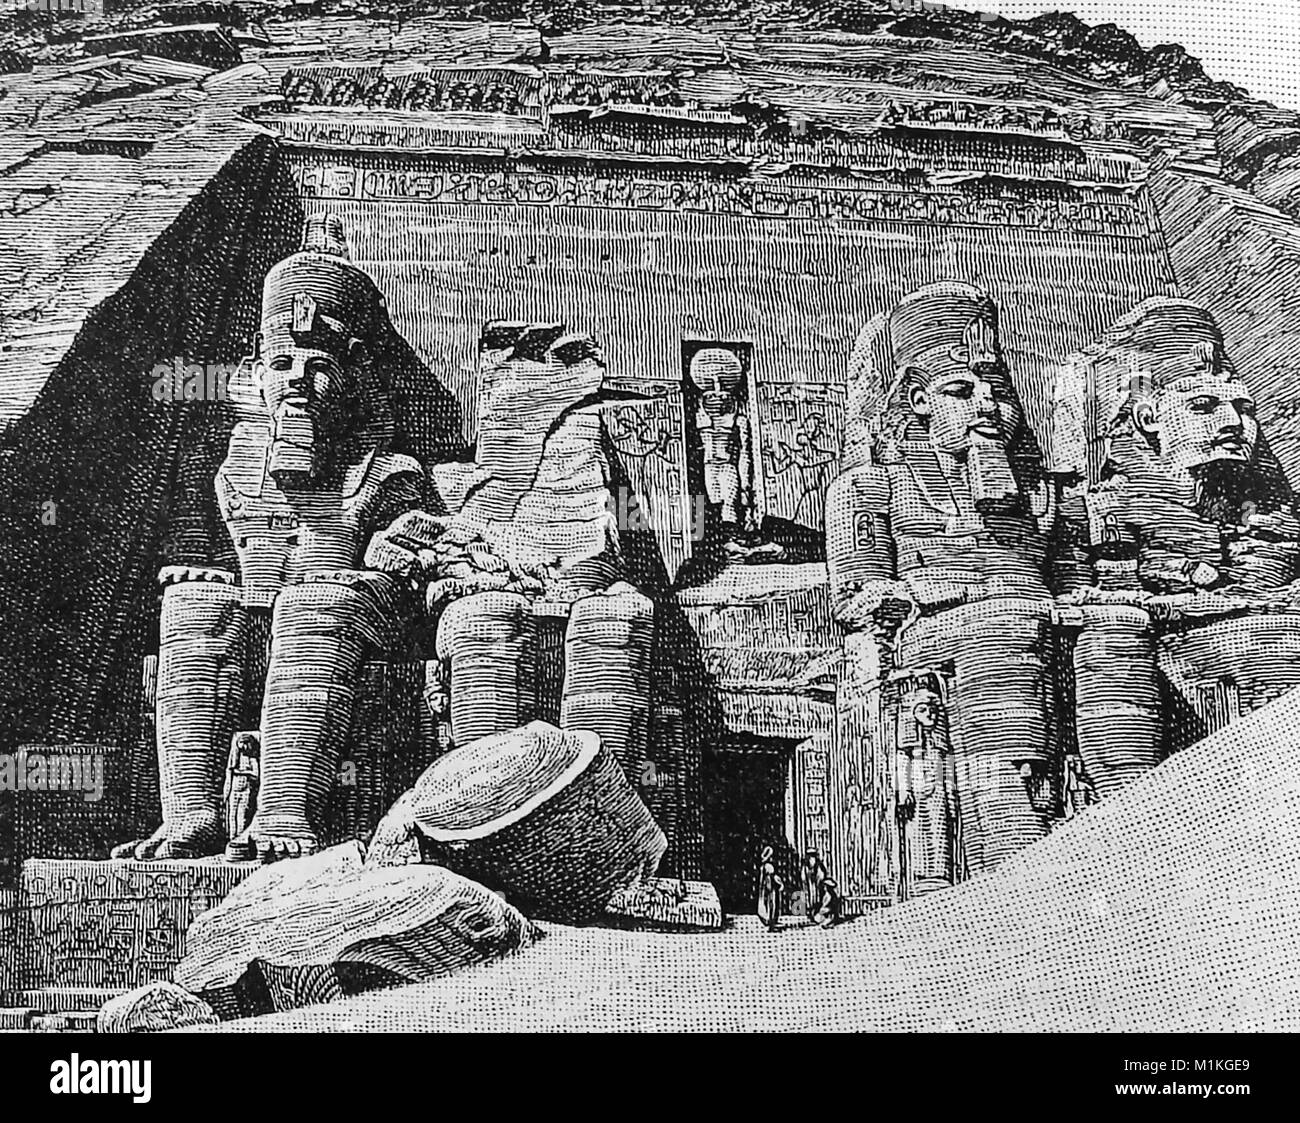 1889 Kammern Enzyklopädie Abbildung der Fassade des großen Tempels von Abu Simbel, in Nubien Bezirk, im Sudan, in Ägypten vor Re - Lage der Ruinen in 1968 Stockfoto